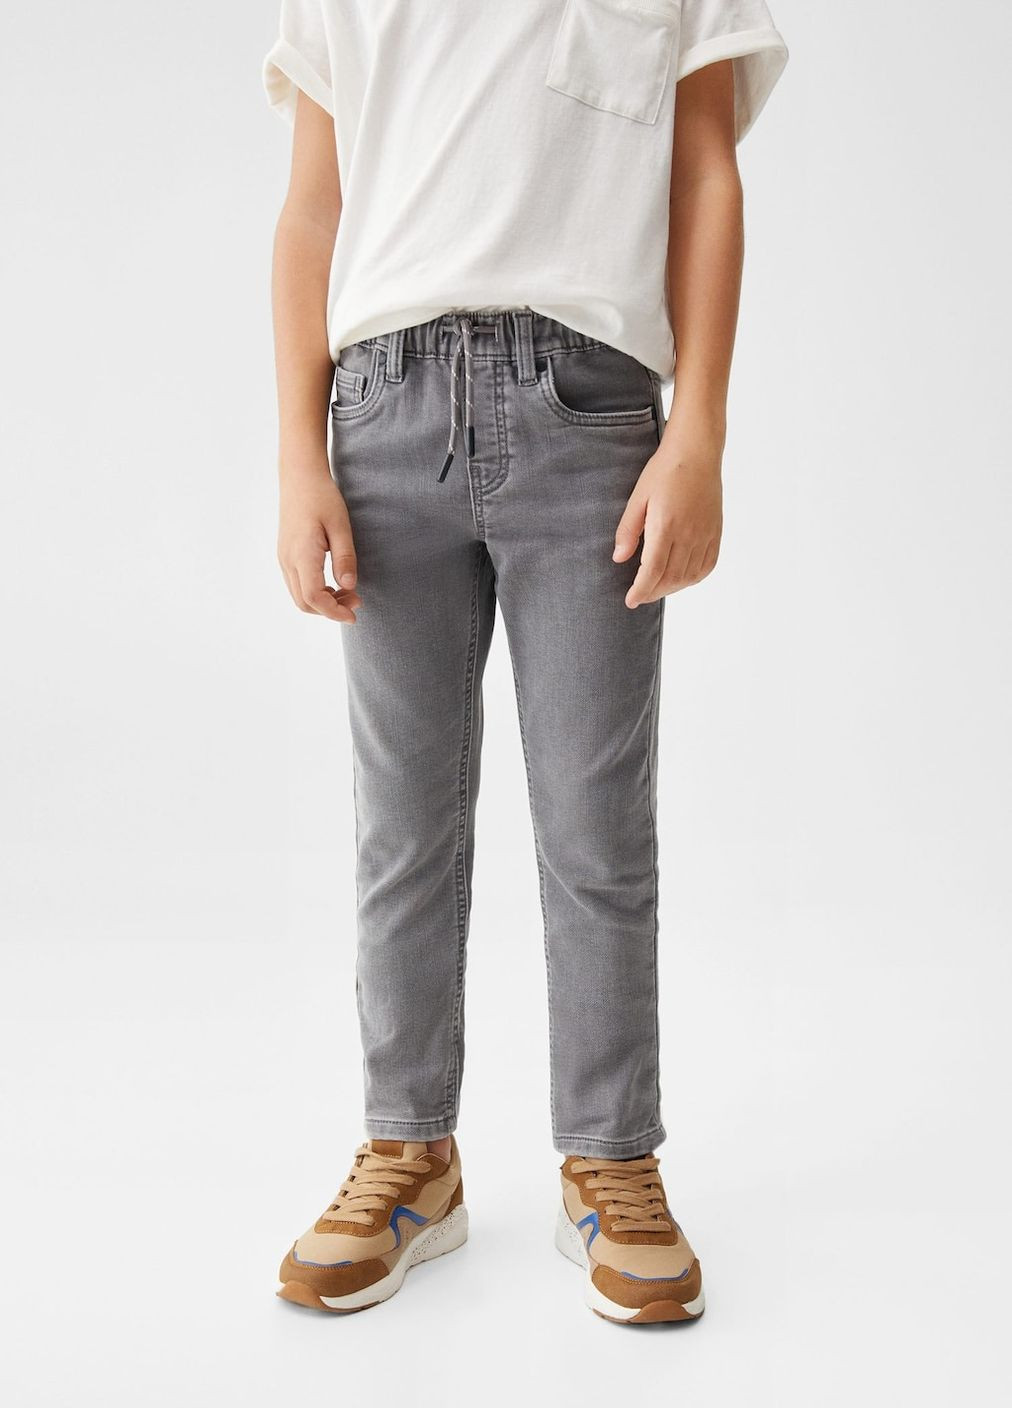 Серые демисезонные джинсы для мальчика 9357 128 см серый 69688 Mango